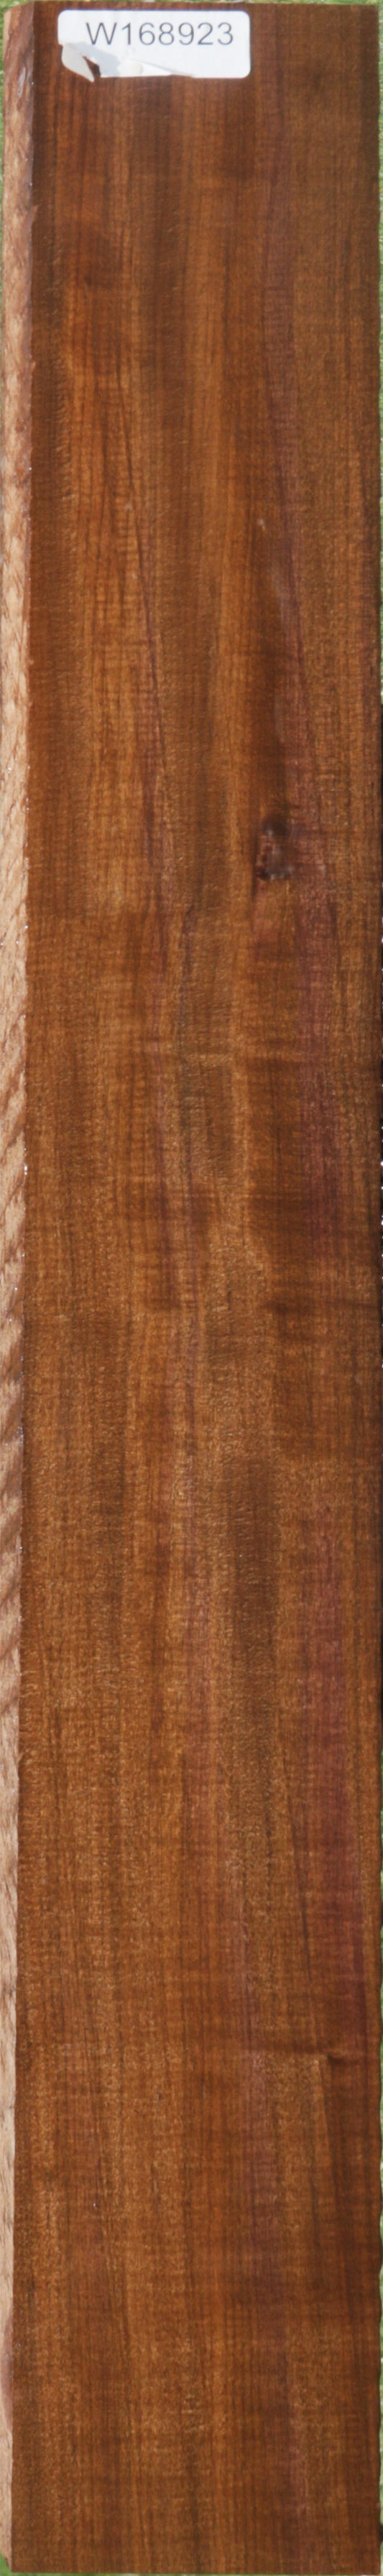 Exhibition Mansonia Lumber